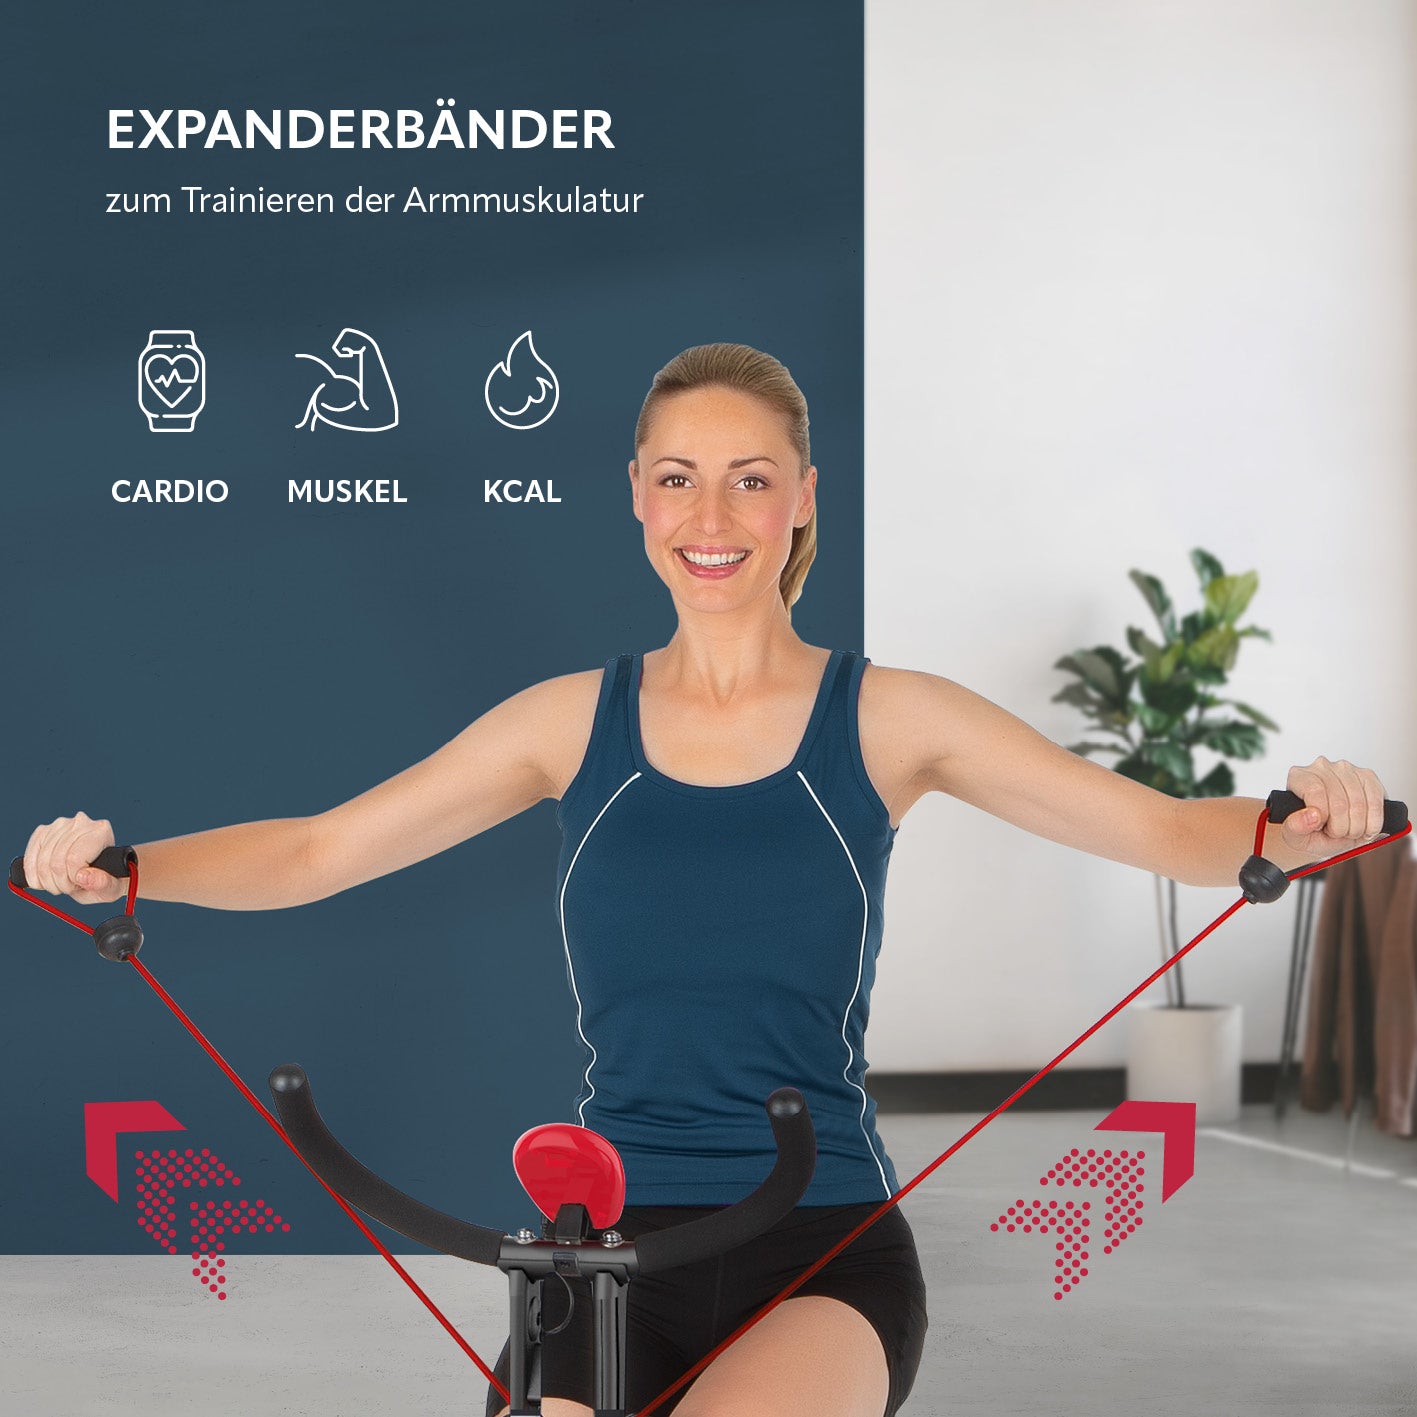 Heimtrainer Fitness Bike mit Expanderbänder